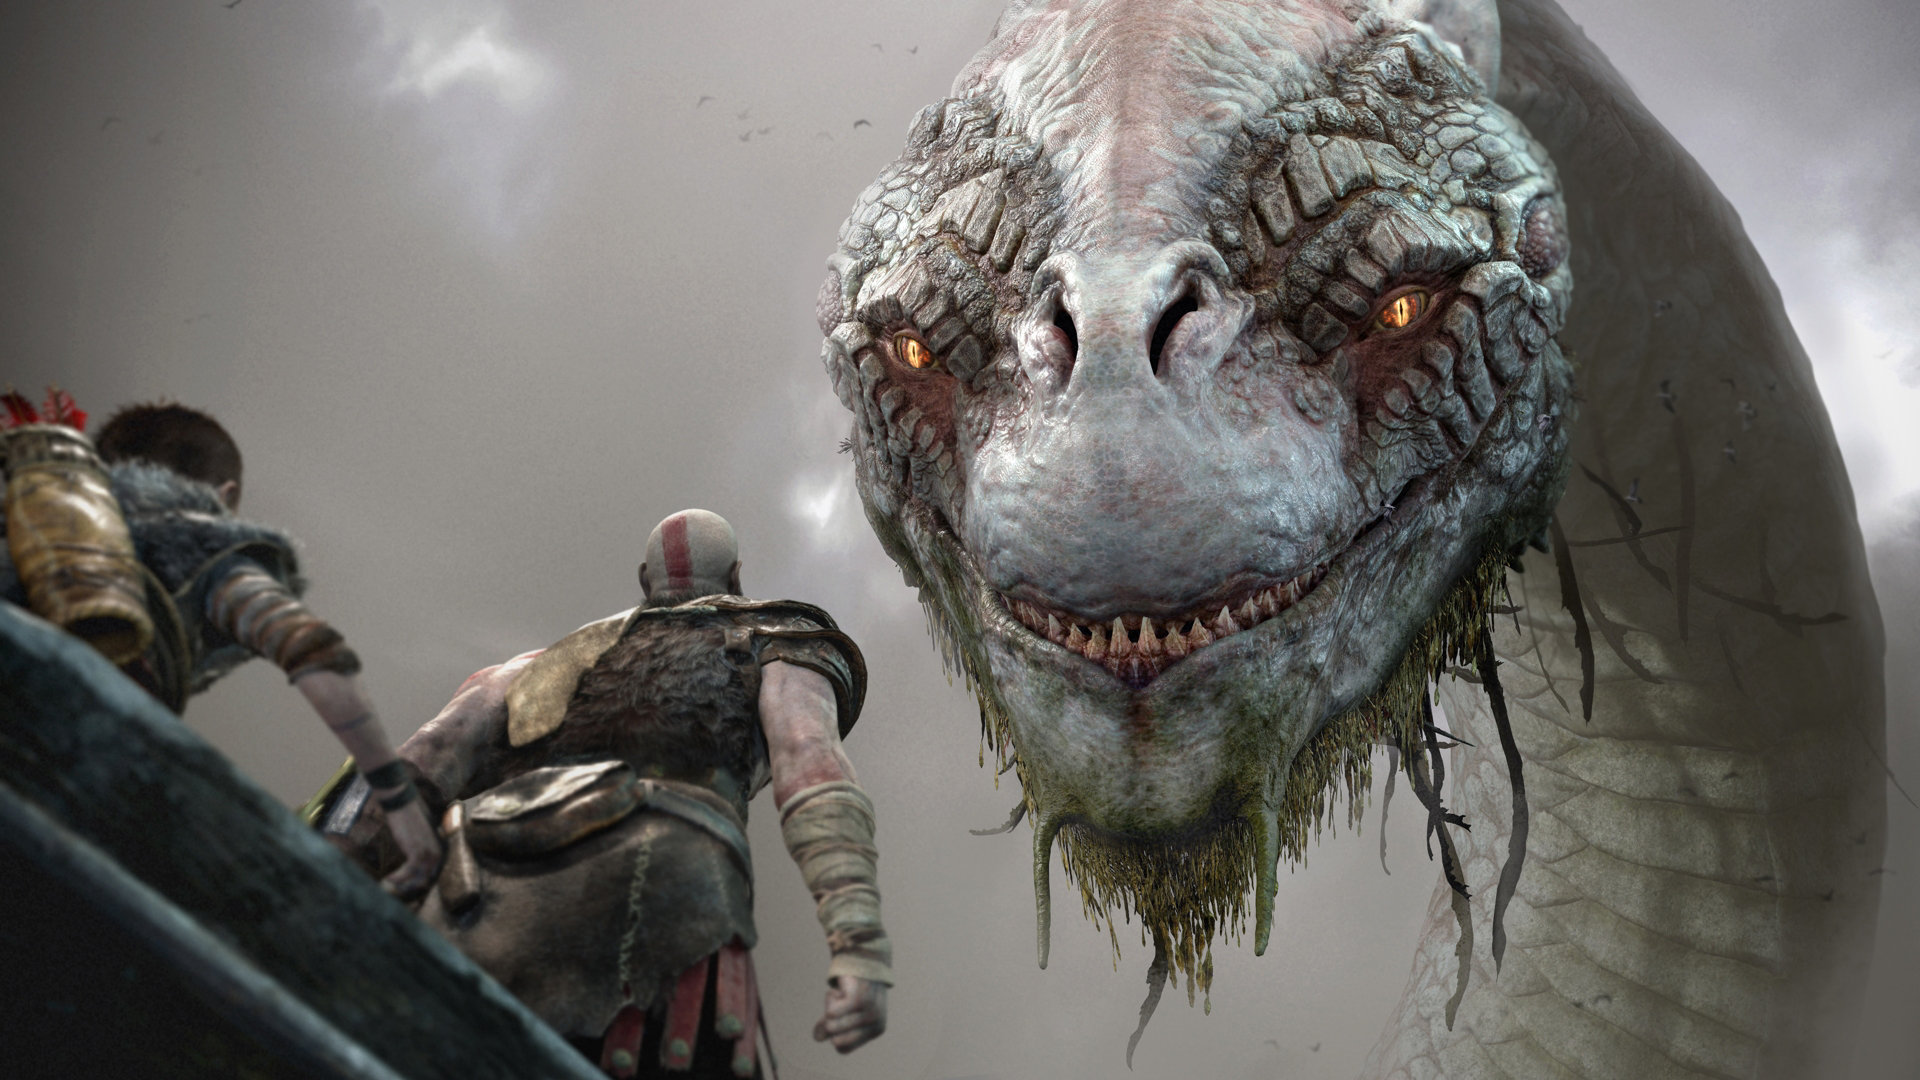 God of War - Kratos and Atreus meet Jormungandr, the World Serpent